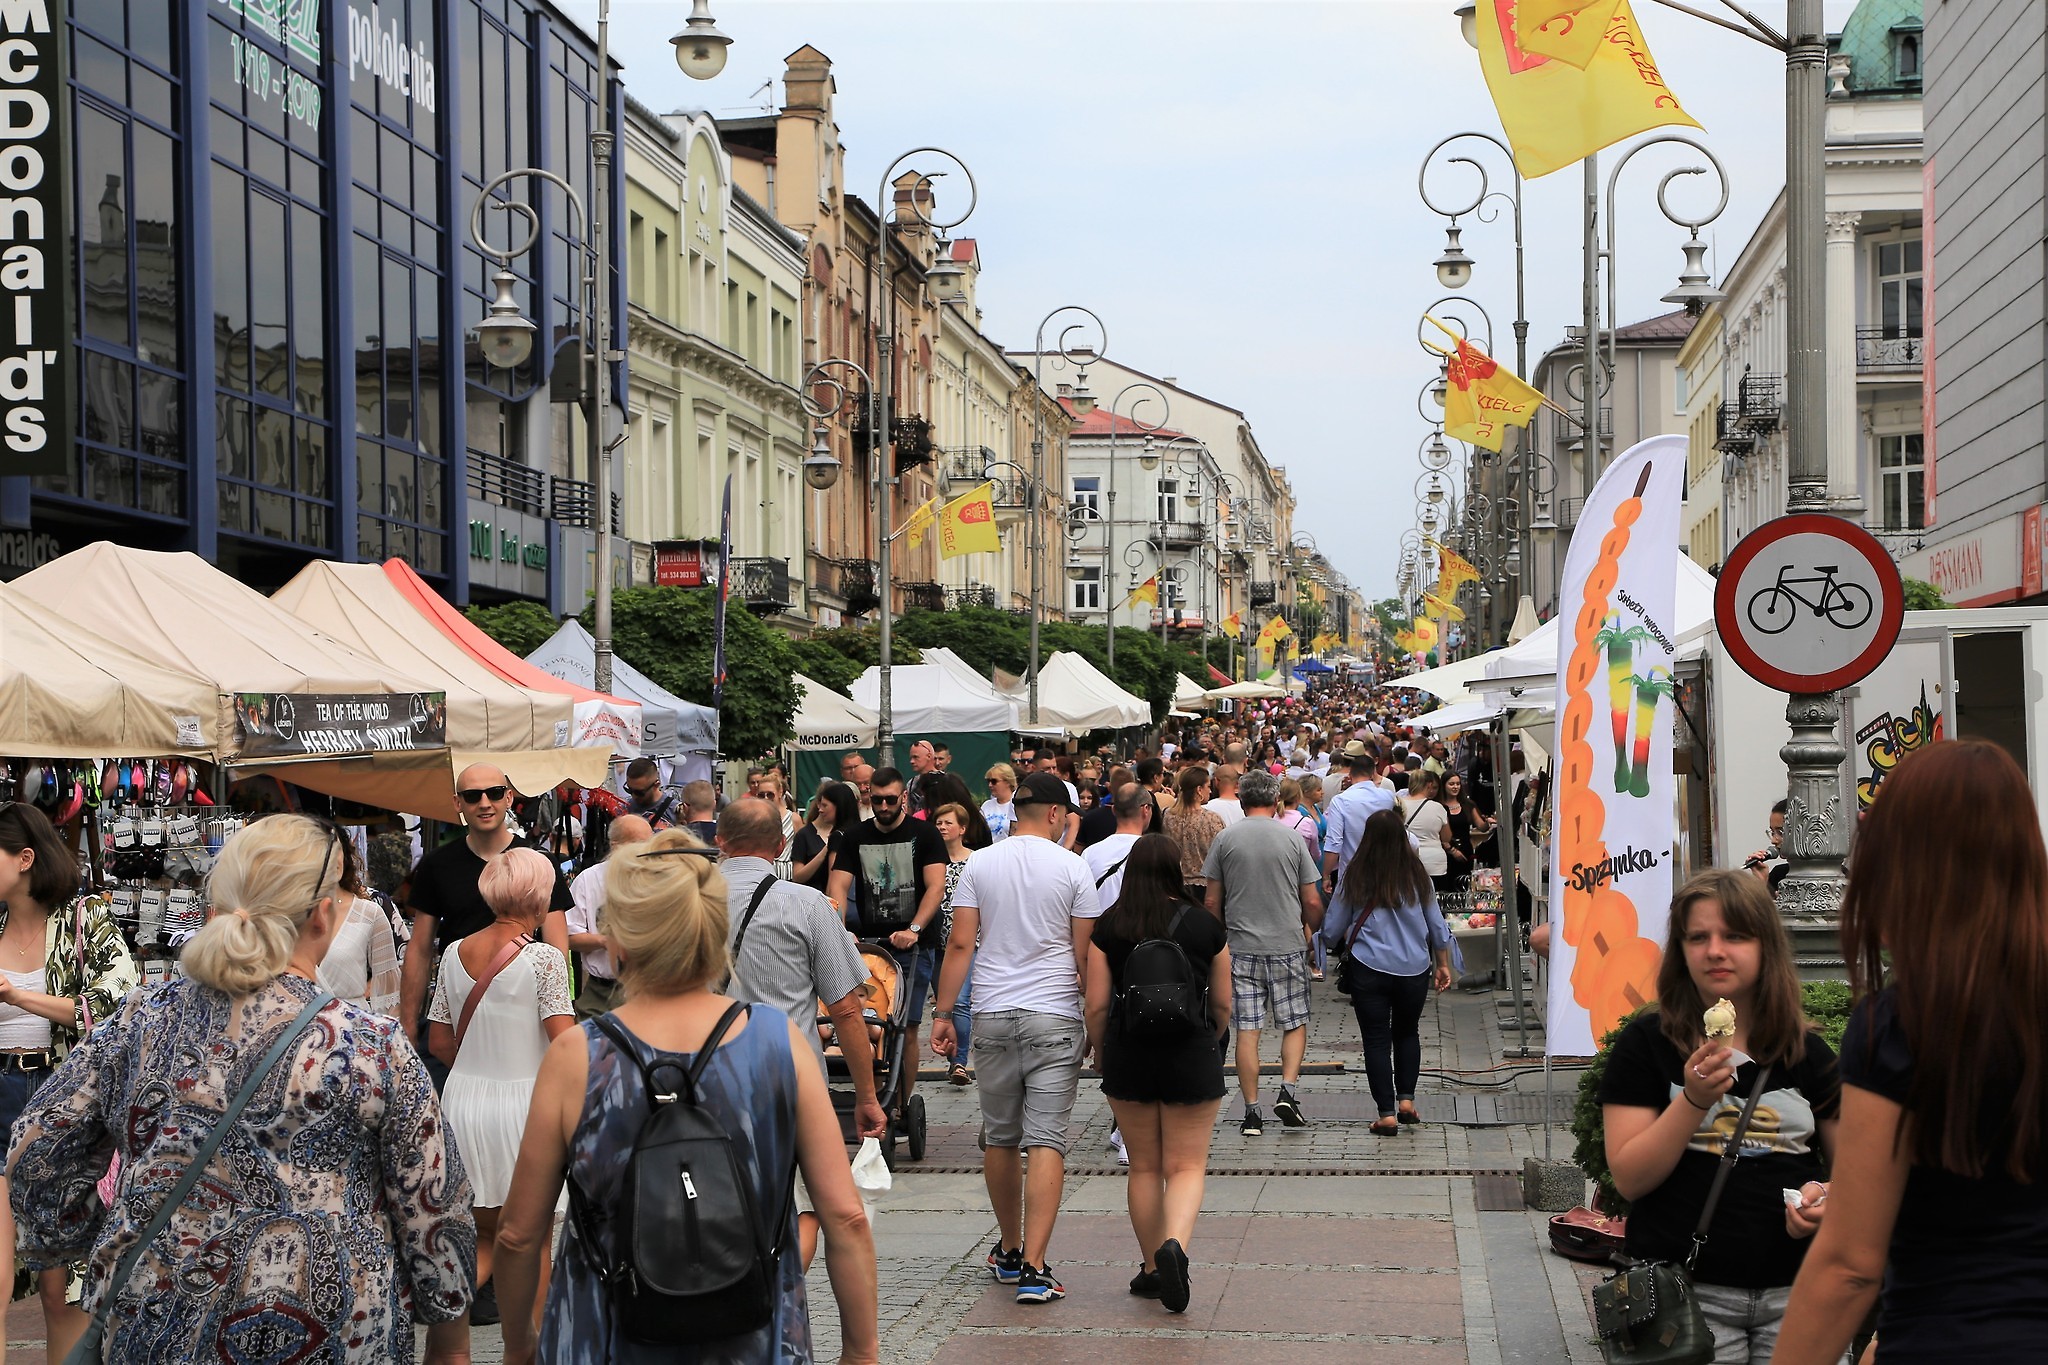 20 czerwca rozpocznie się tradycyjny jarmark na ul. Sienkiewicza, którzy poprzedzi Święto Kielc